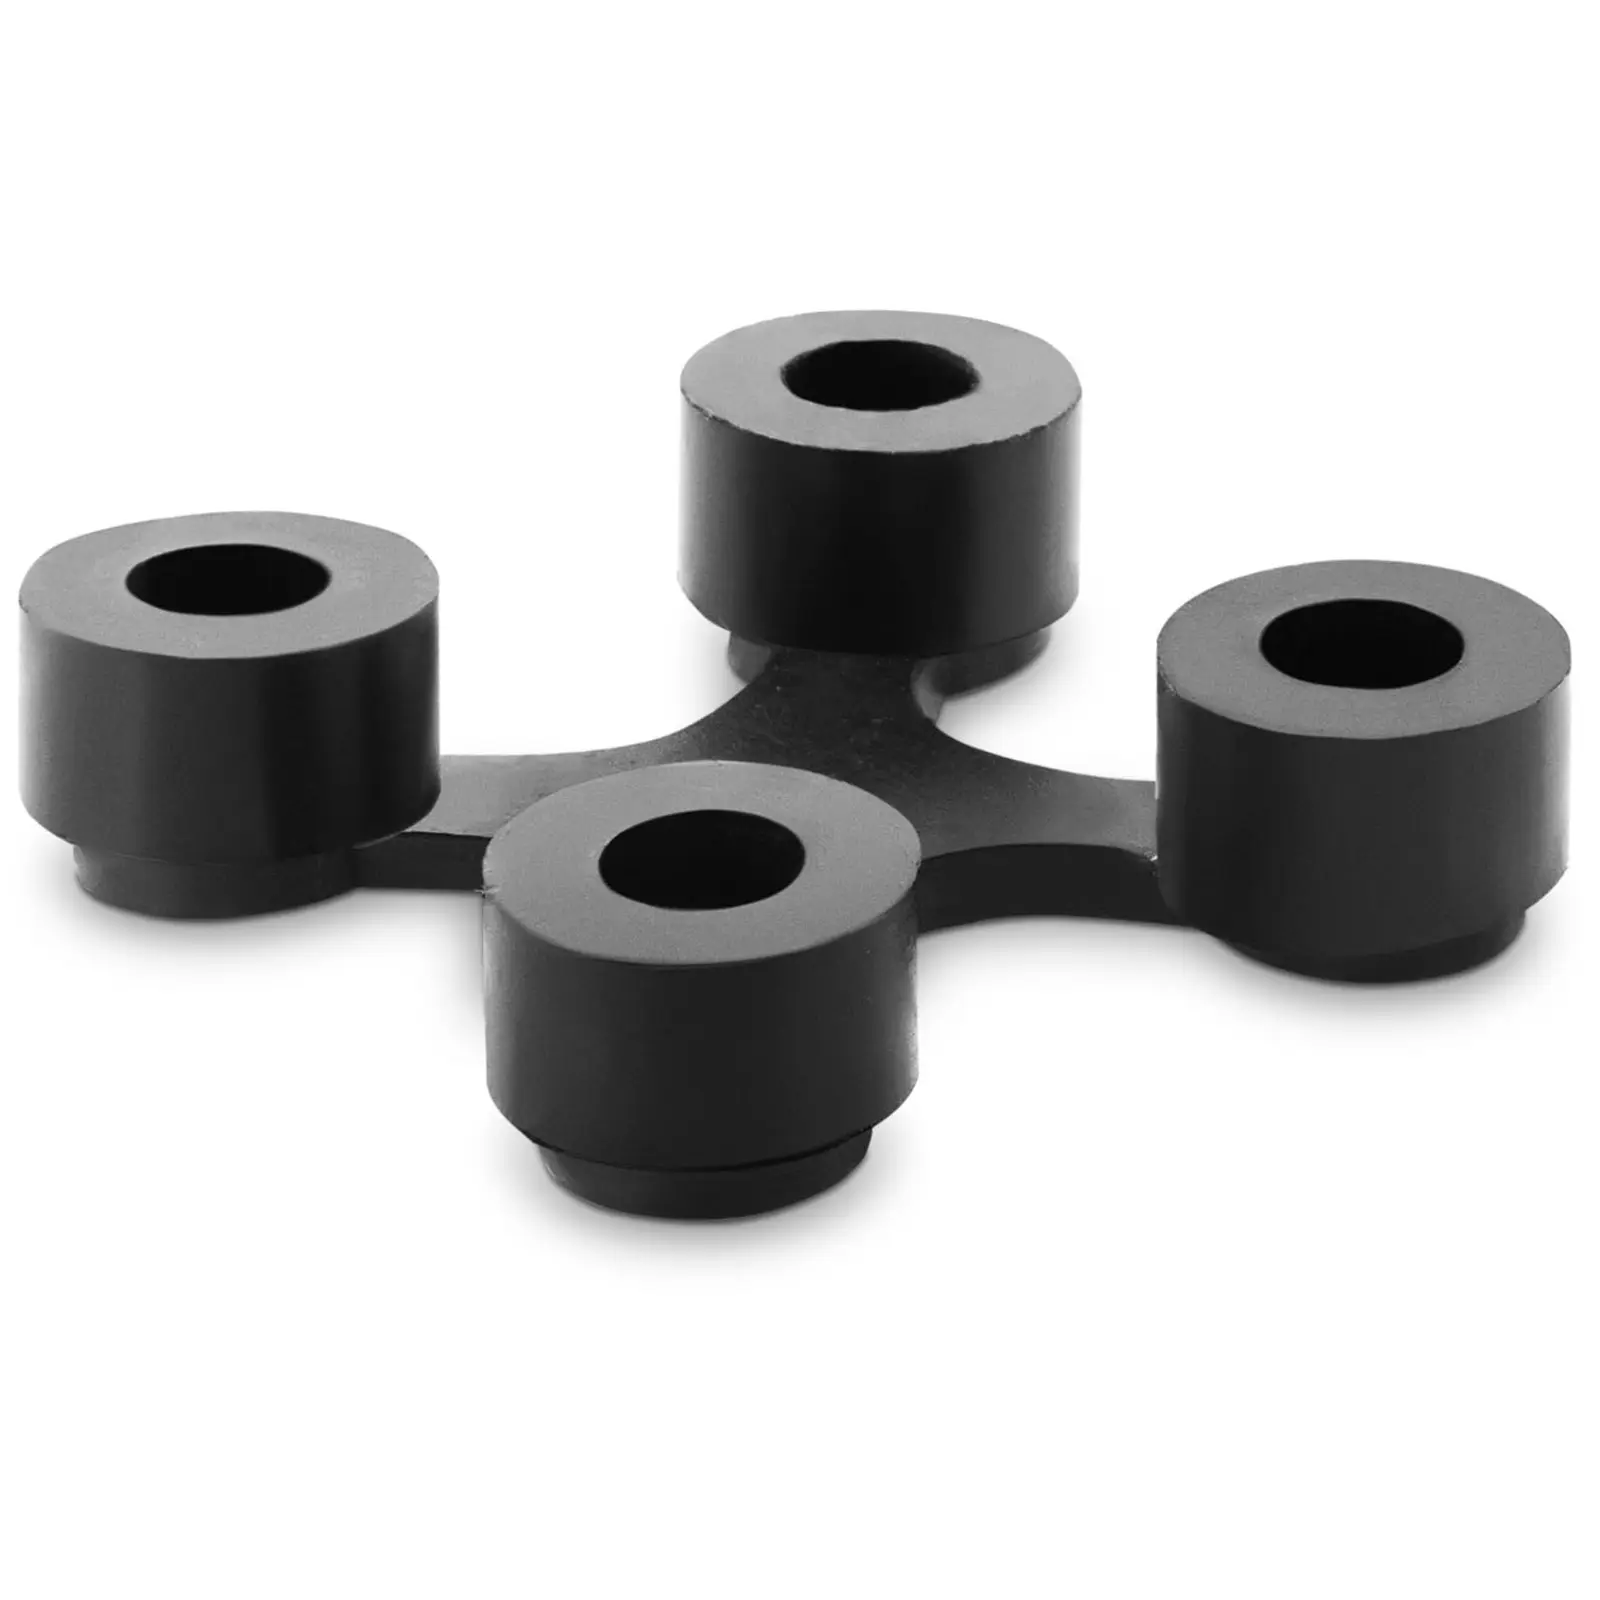 Piezas de conexión - 3.5 x 3,5 x 0,5 cm - negro